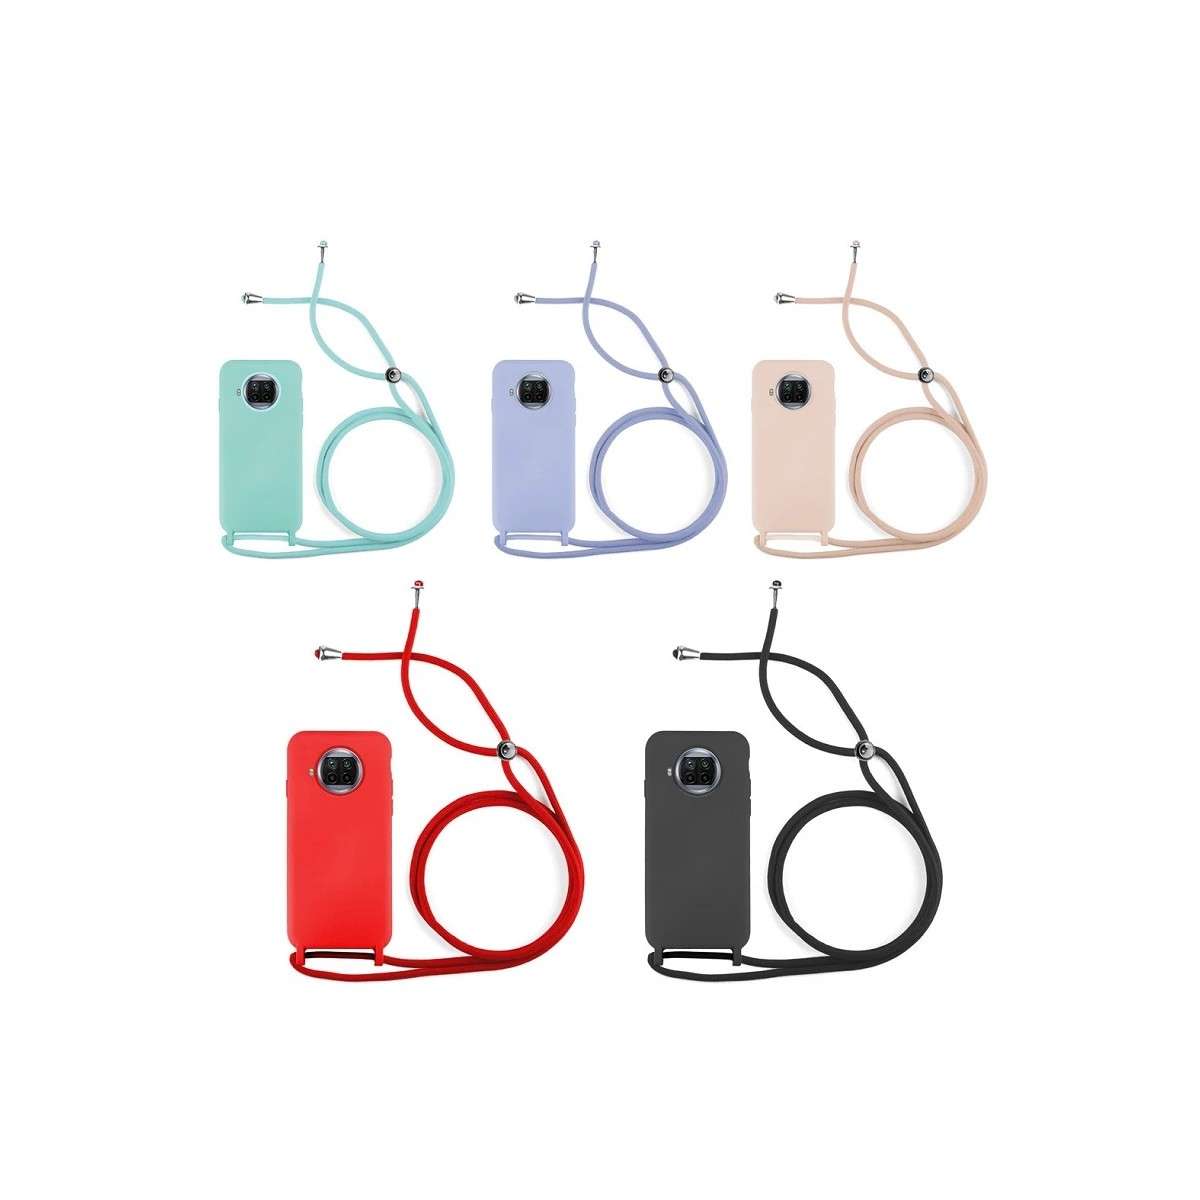 Funda suave y de color para el Xiaomi 12 Lite